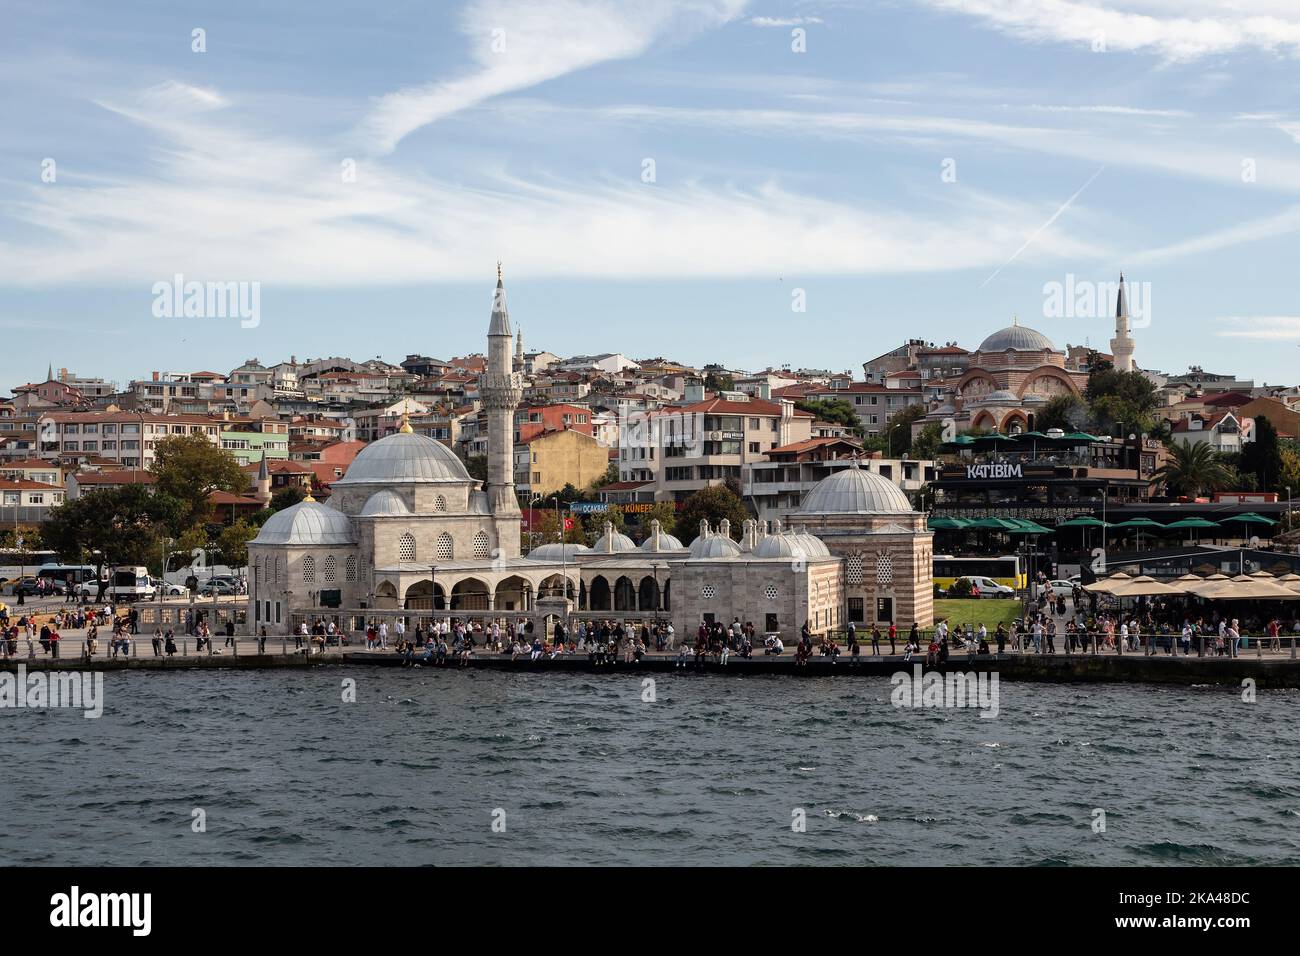 Blick auf die historische Moschee Semsi Pasa am Uskudar-Platz auf der asiatischen Seite Istanbuls. Es ist ein sonniger Sommertag. Wunderschöne Szene. Stockfoto